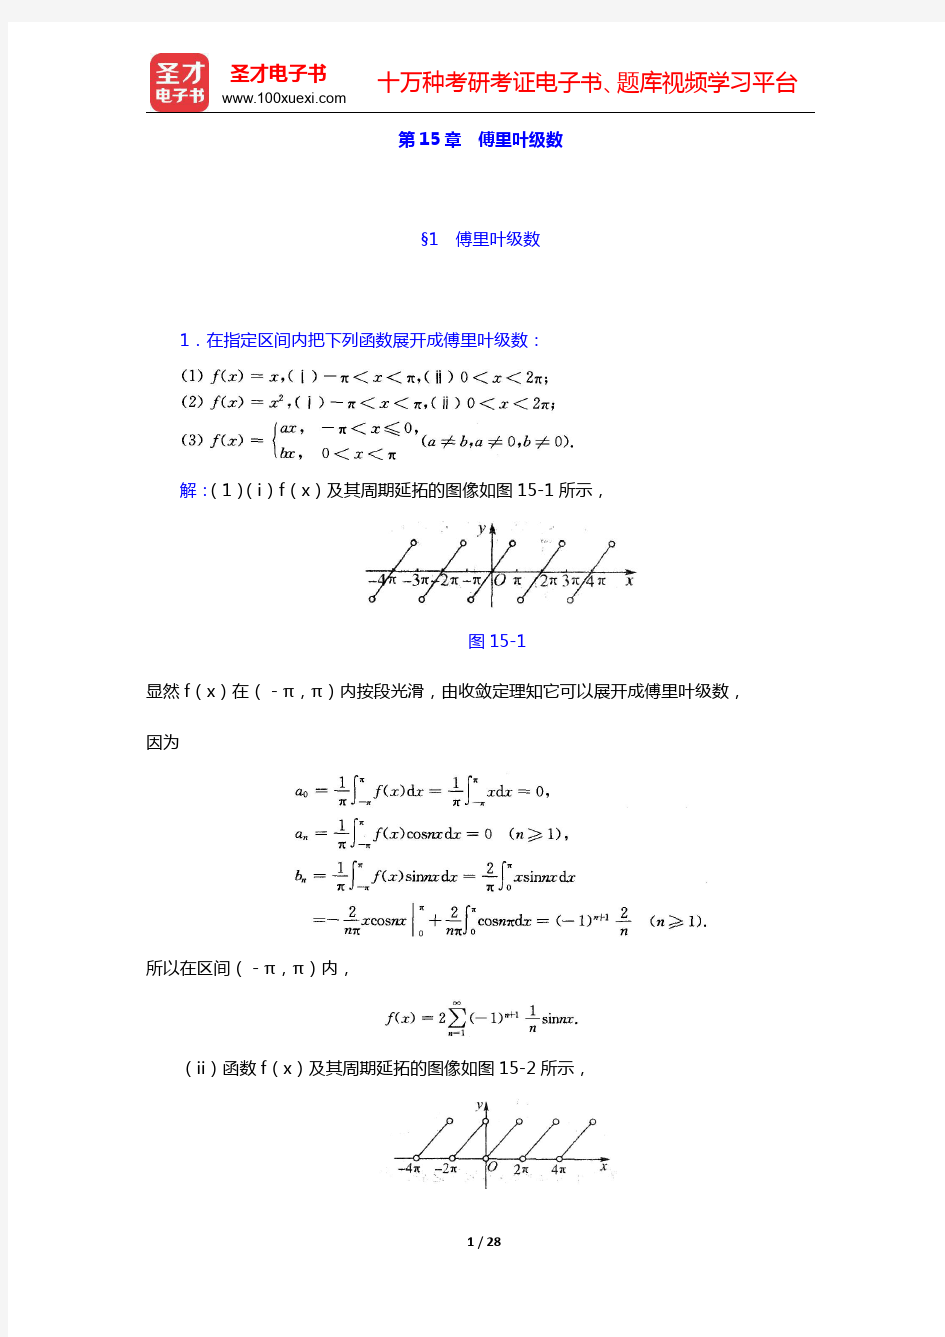 华东师范大学数学系《数学分析》(第4版)(下册)课后习题-傅里叶级数(圣才出品)